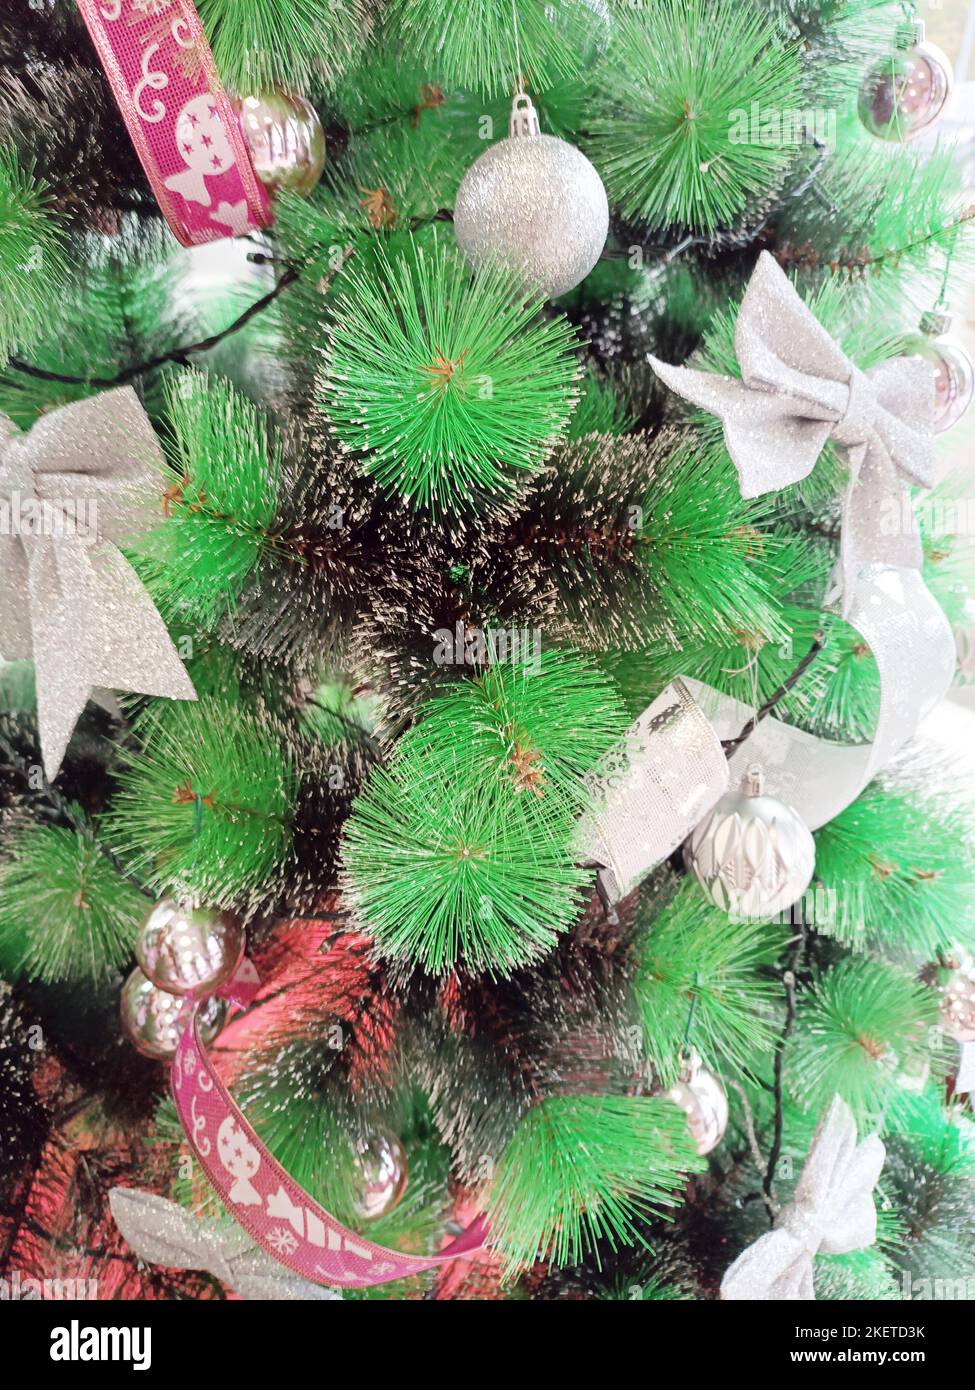 Décorations de Noël accrochées sur l'arbre vert, matière synthétique, culture italienne. Banque D'Images